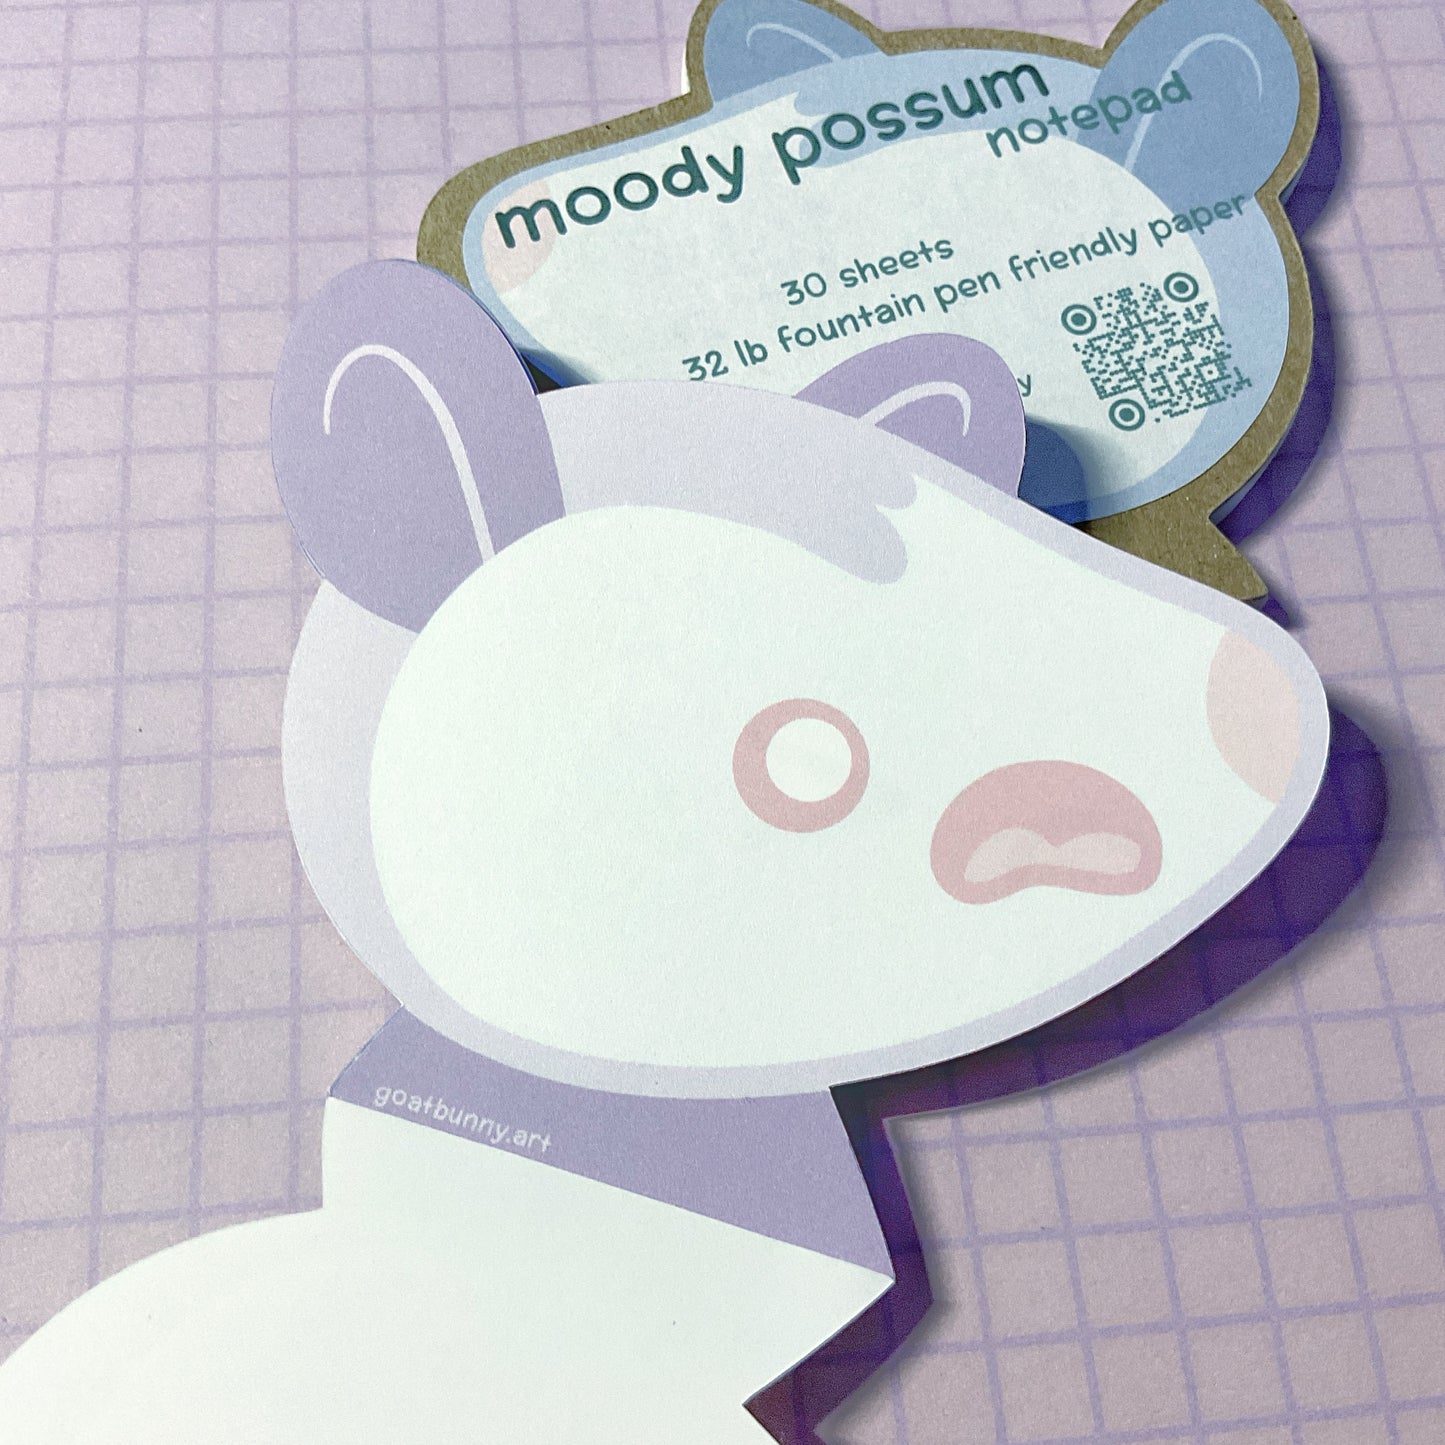 Moody Possum notepad